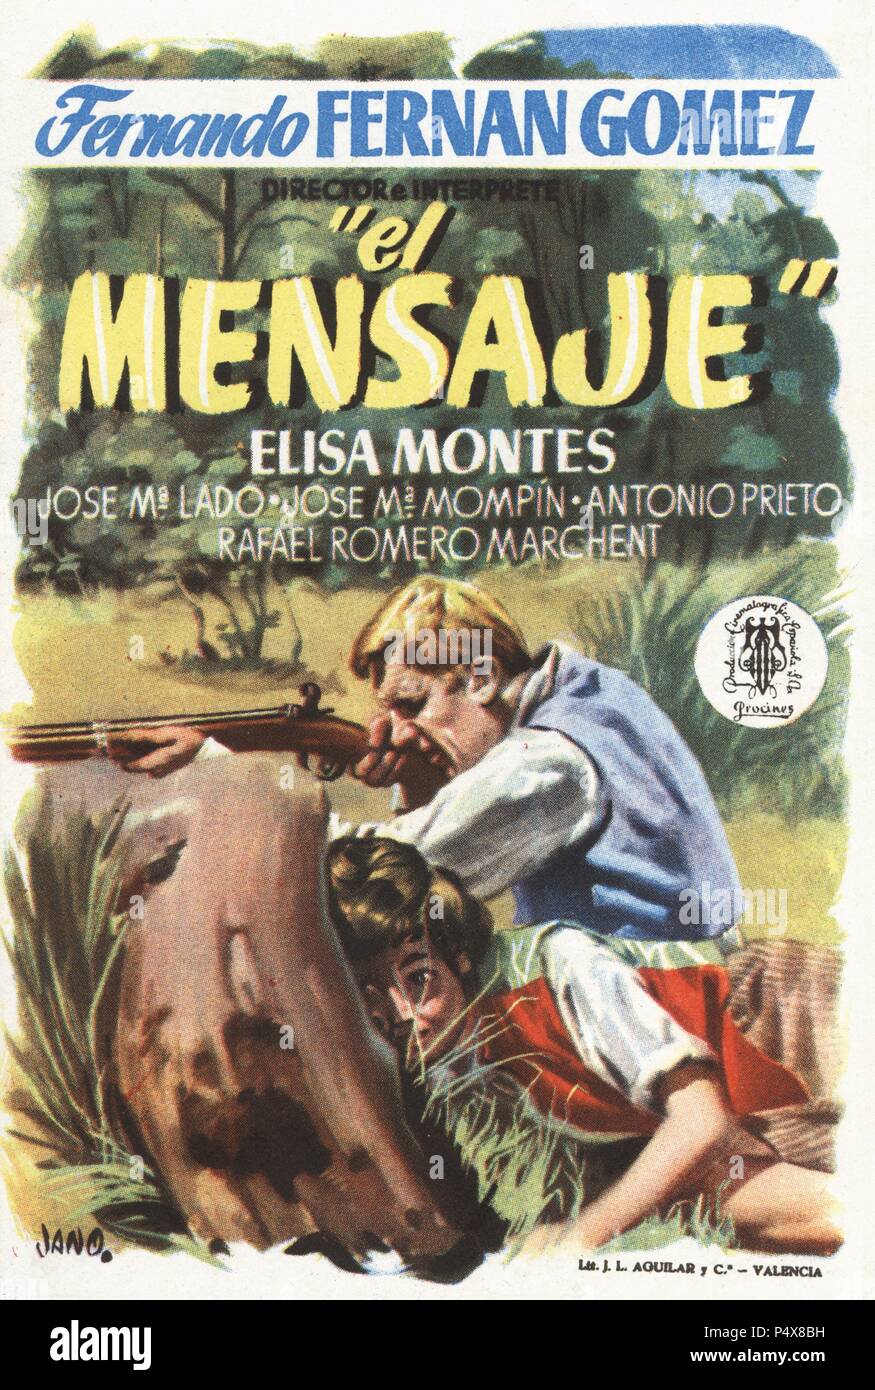 Cartel de la película El Mensaje, con Fernando Fernán-Gómez y Elisa Montes; primera película dirigida por Fernando Fernán-Gómez. España, Año 1953. Stock Photo